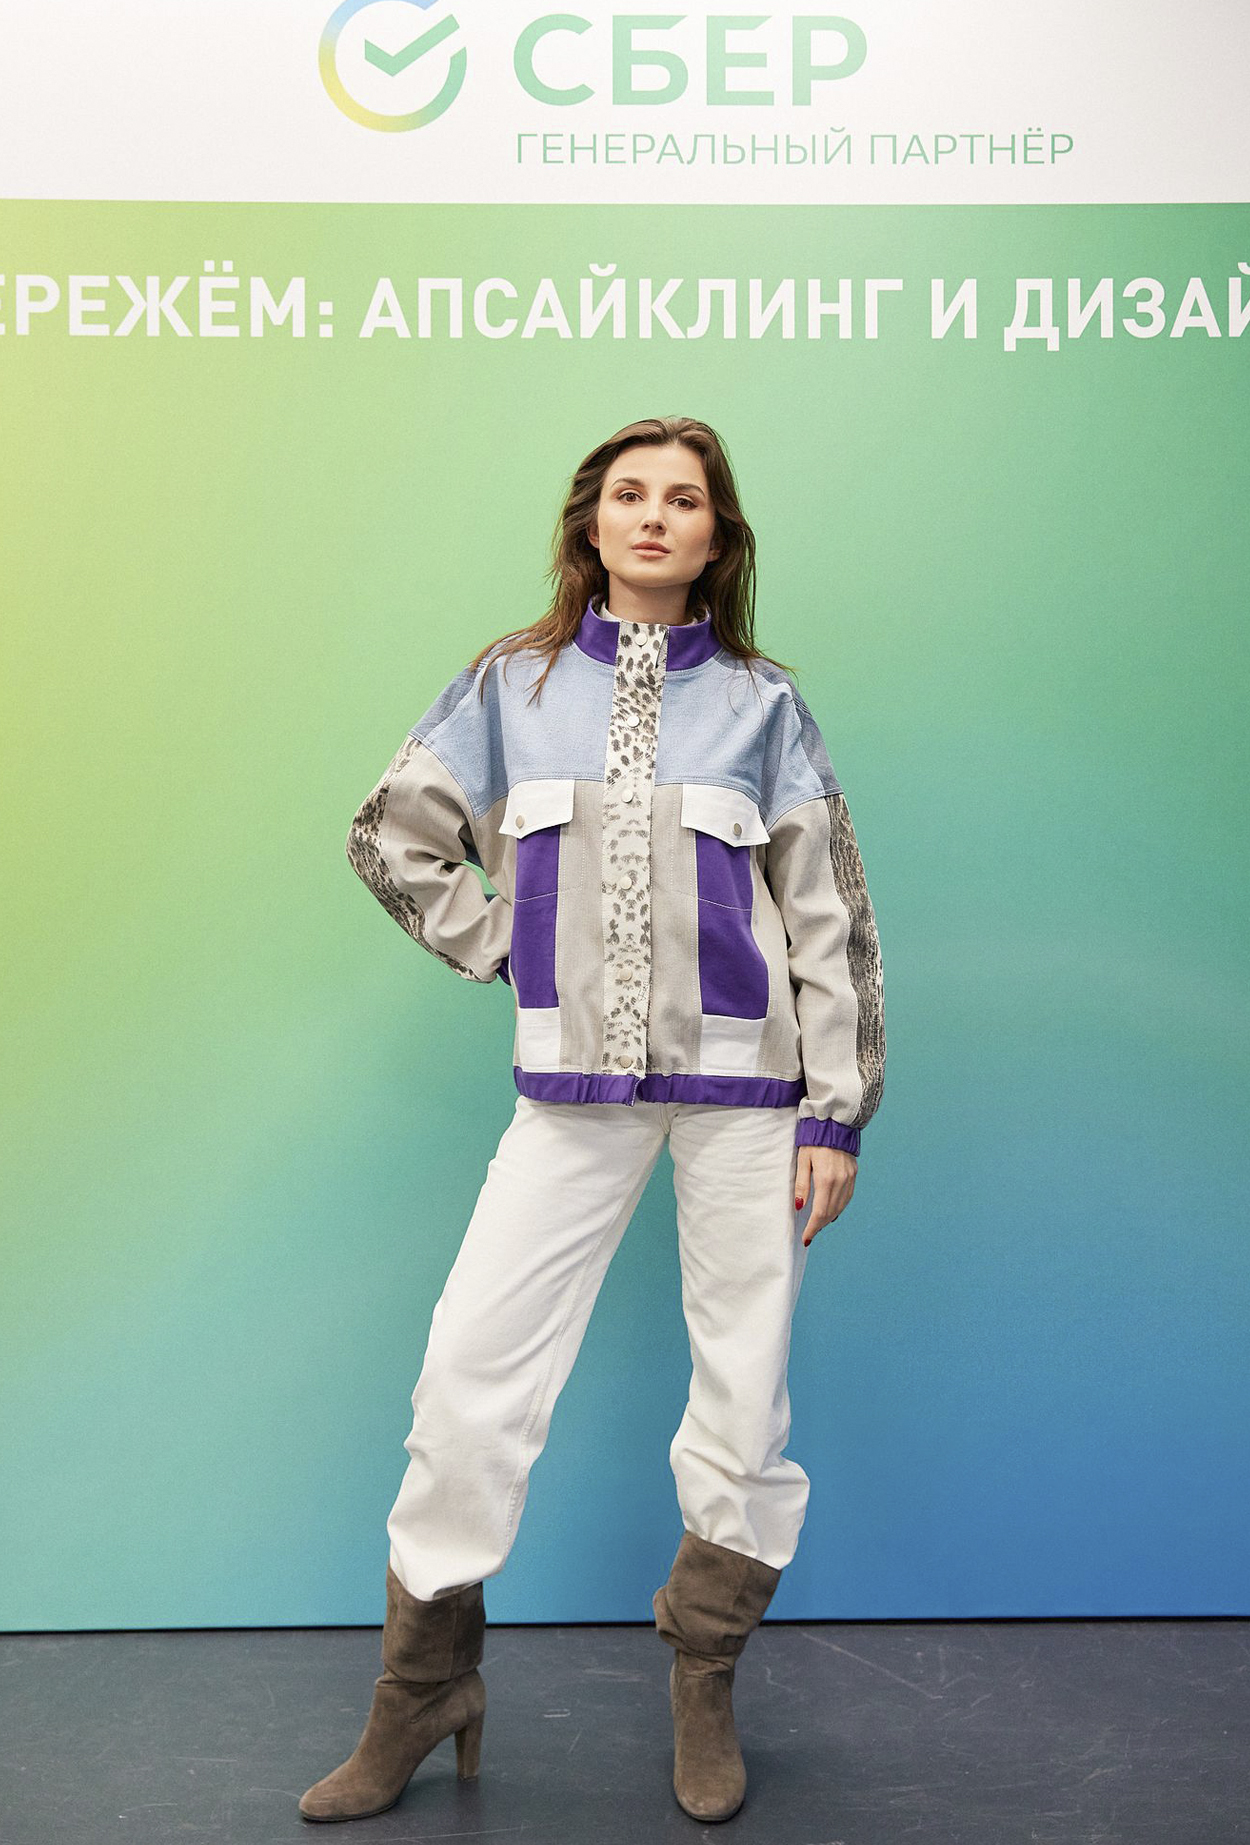 Анастасия Рогова: интервью с дизайнерами ТОП-10 конкурса «СБЕРЕЖЕМ: апсайклинг и дизайн 2022» 4